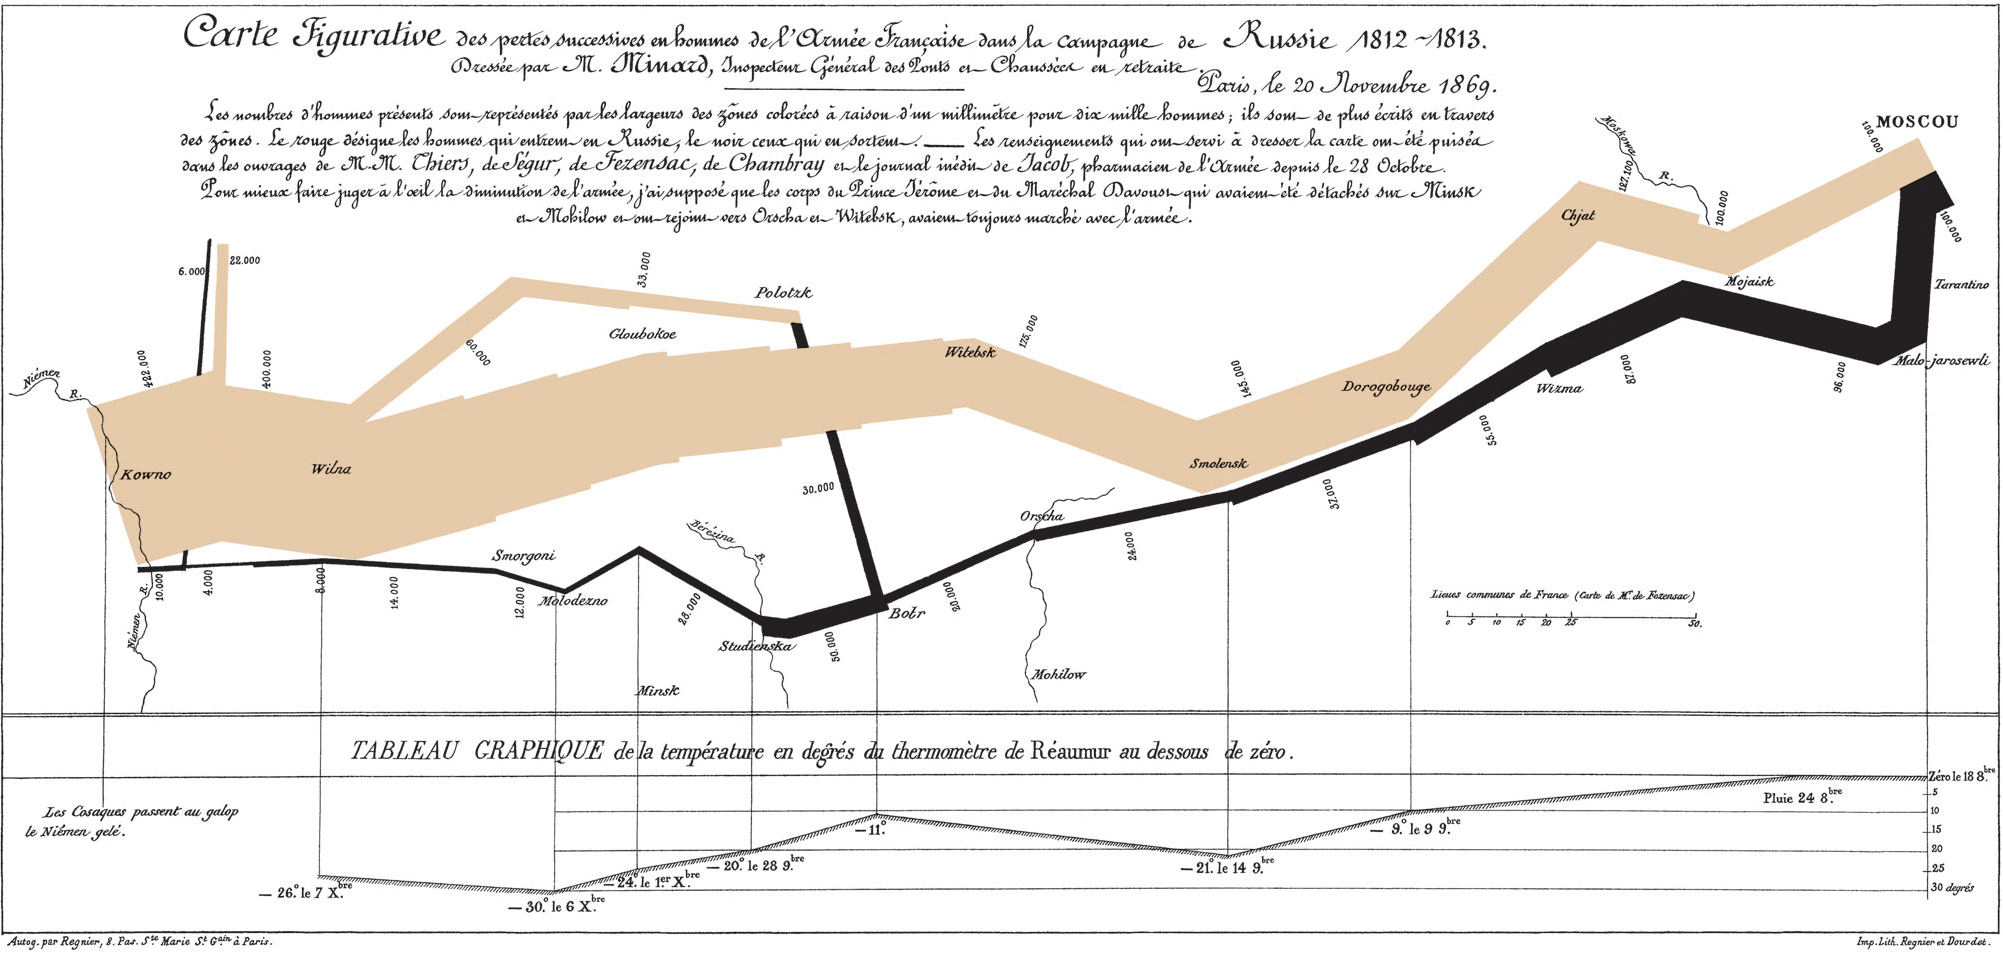 1812년 나폴레옹 러시아 원정군 인원수, 이동 경로, 귀환길에서의 온도를 보여주는 1896년 찰스 미나드 차트.